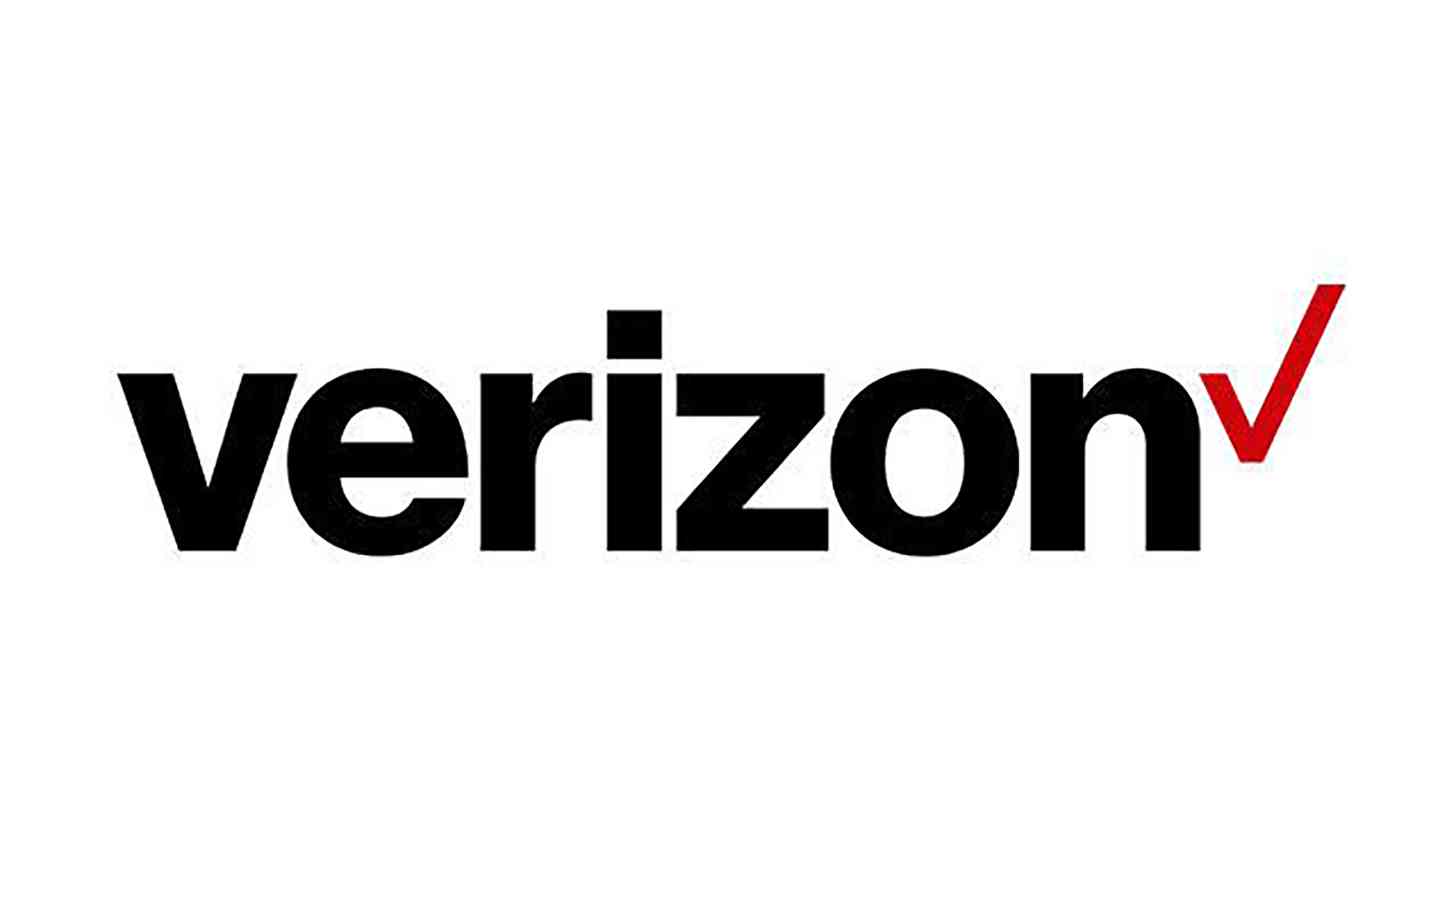 New Verizon logo official